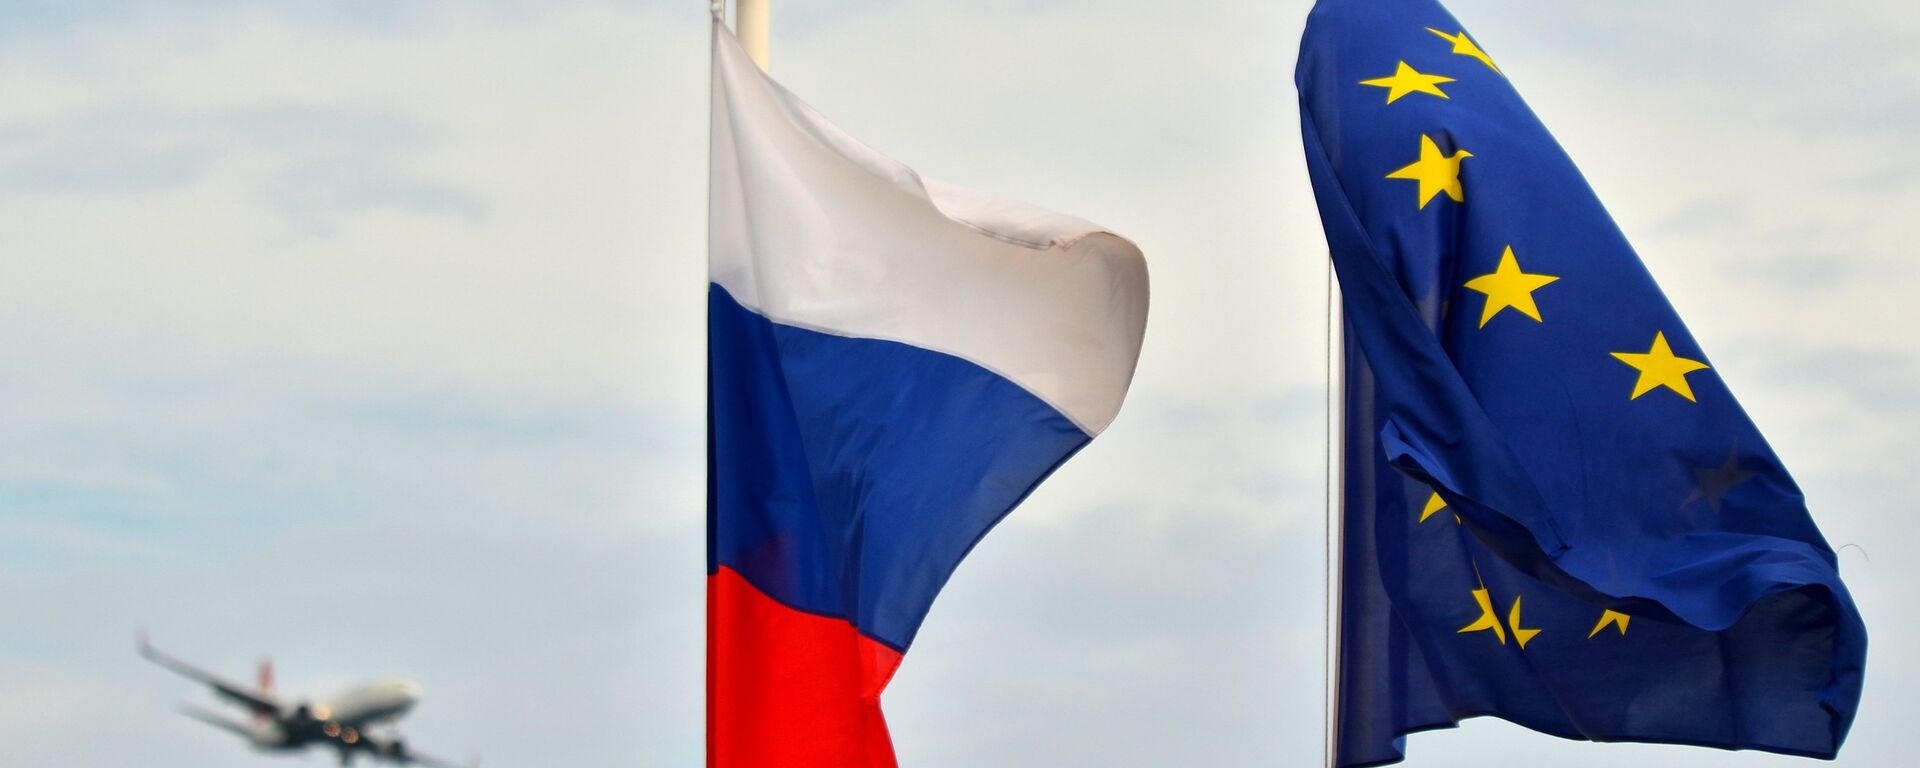 Флаги России, ЕС, Франции и герб Ниццы на набережной Ниццы - Sputnik Латвия, 1920, 01.04.2016